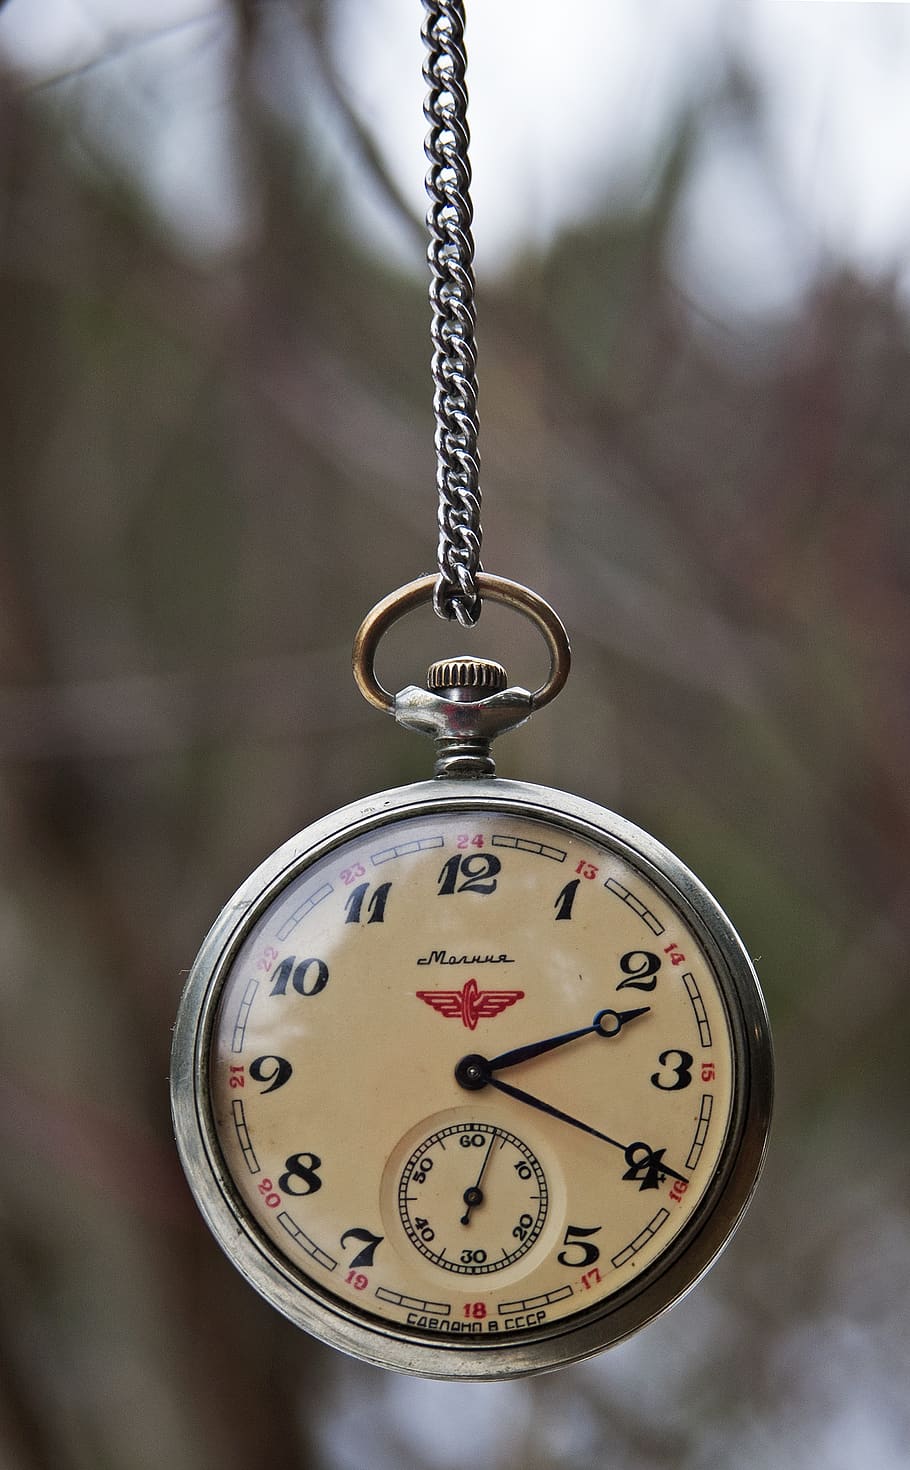 vintage, relógio de bolso, russo, soviético, molinja, relógio fob, feito em cccp, cccp, tempo, velho